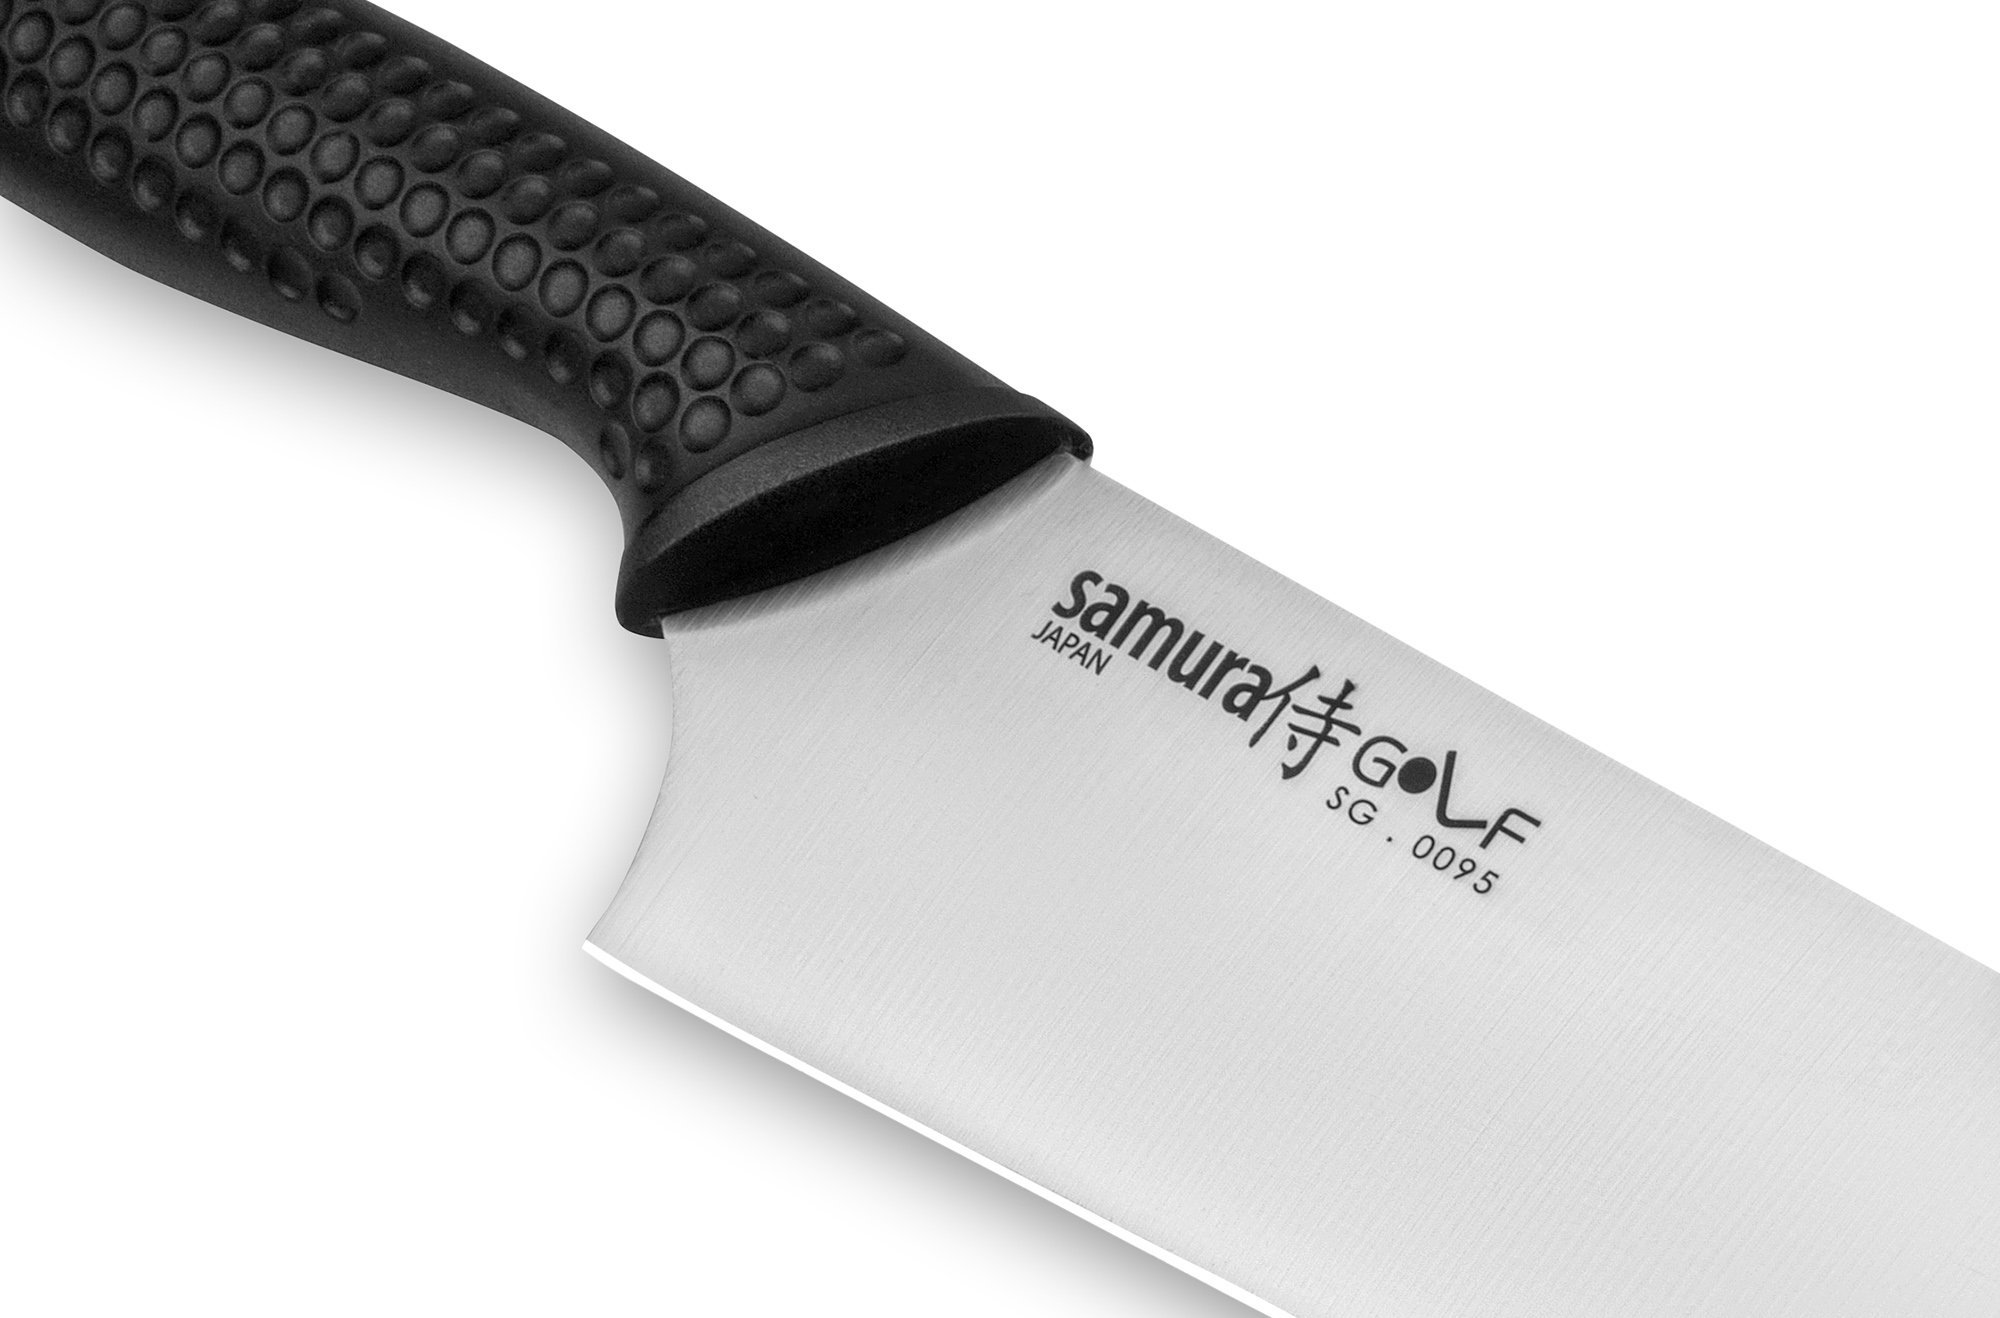 Нож Сантоку Samura GOLF - SG-0095, сталь AUS-8, рукоять полипропилен, 180 мм от Ножиков